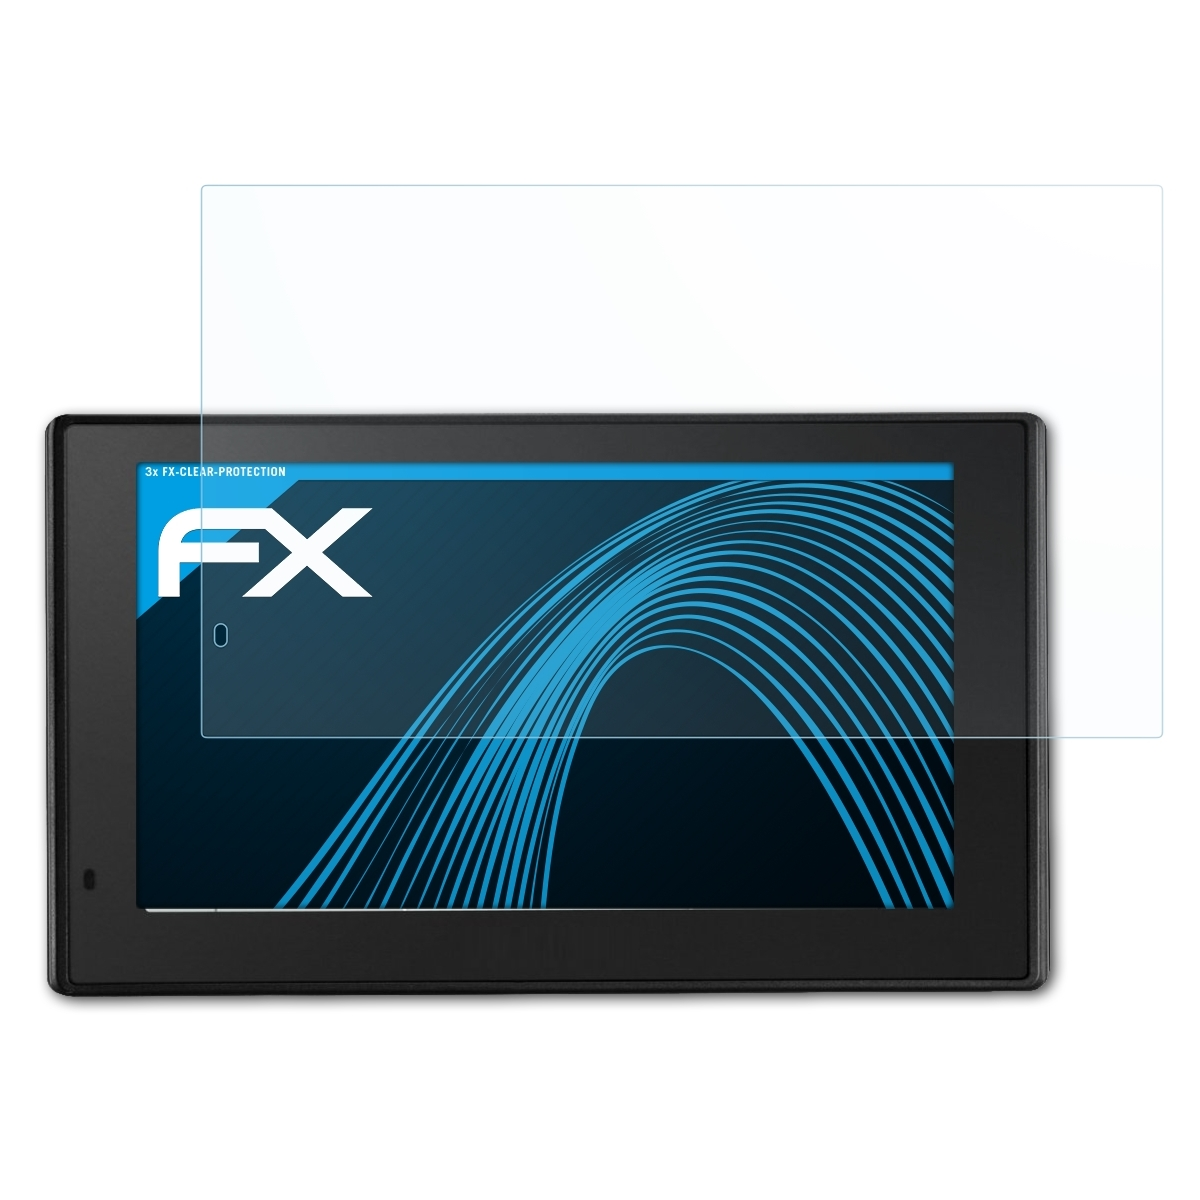 ATFOLIX 3x FX-Clear DriveAssist Garmin 50LMT-D) Displayschutz(für